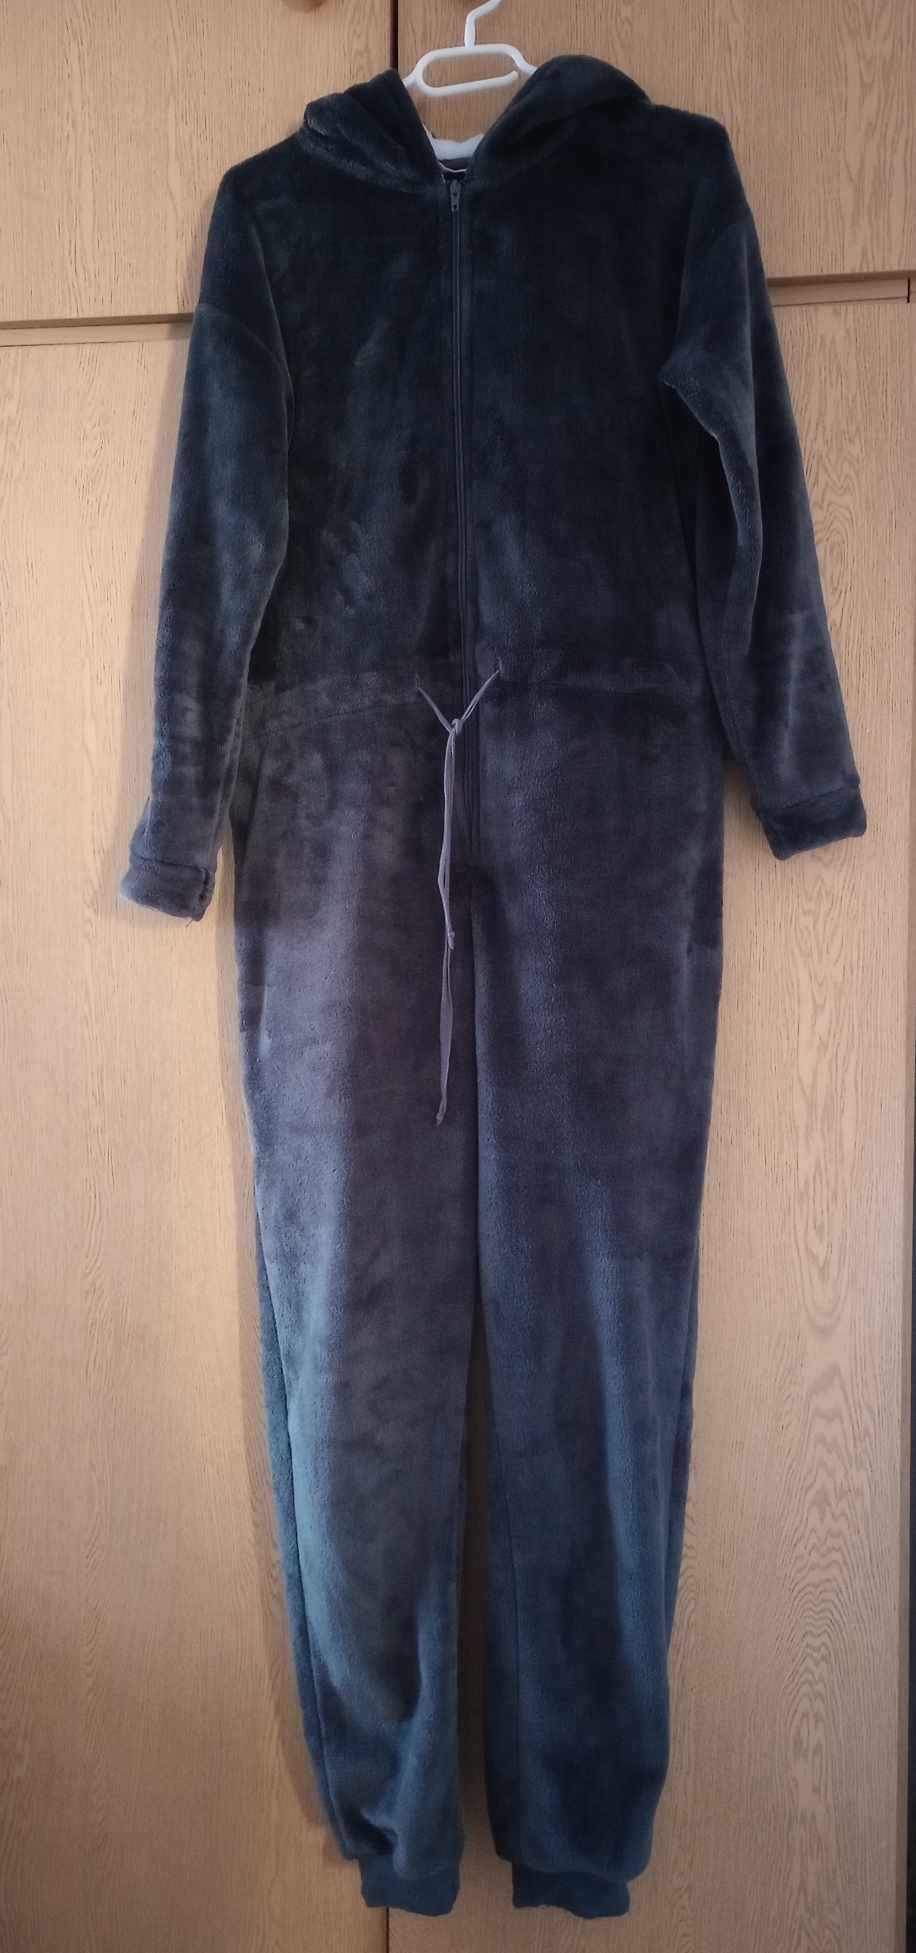 Jednoczęściowe ciemno szare piżamo z kapturem